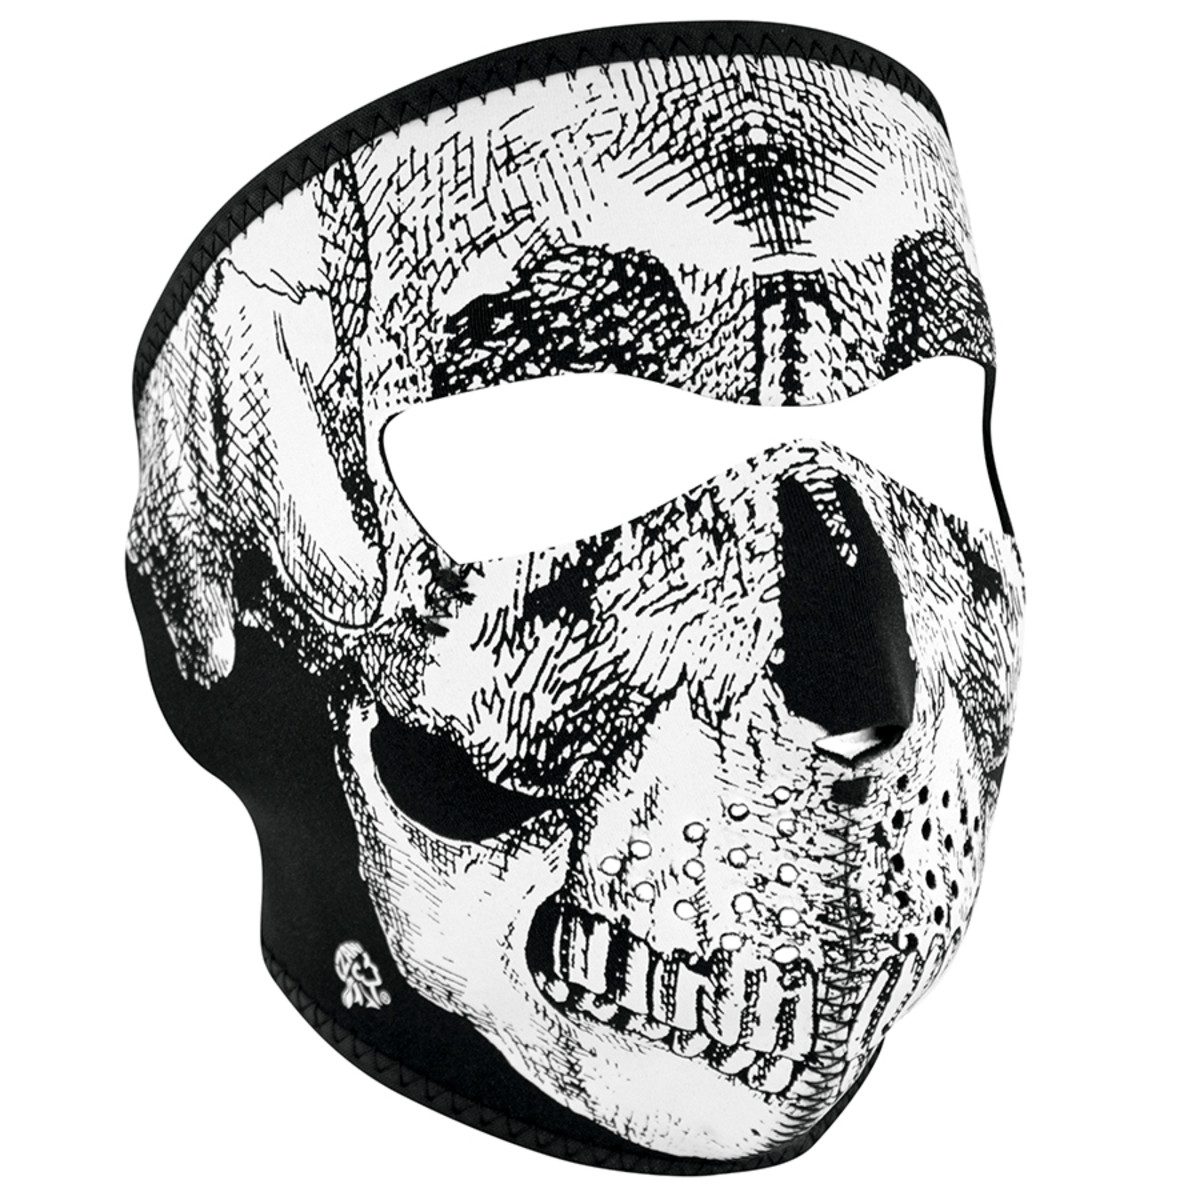 Zan Headgear Neoprene Full Face Mask - Black & White Skull Face